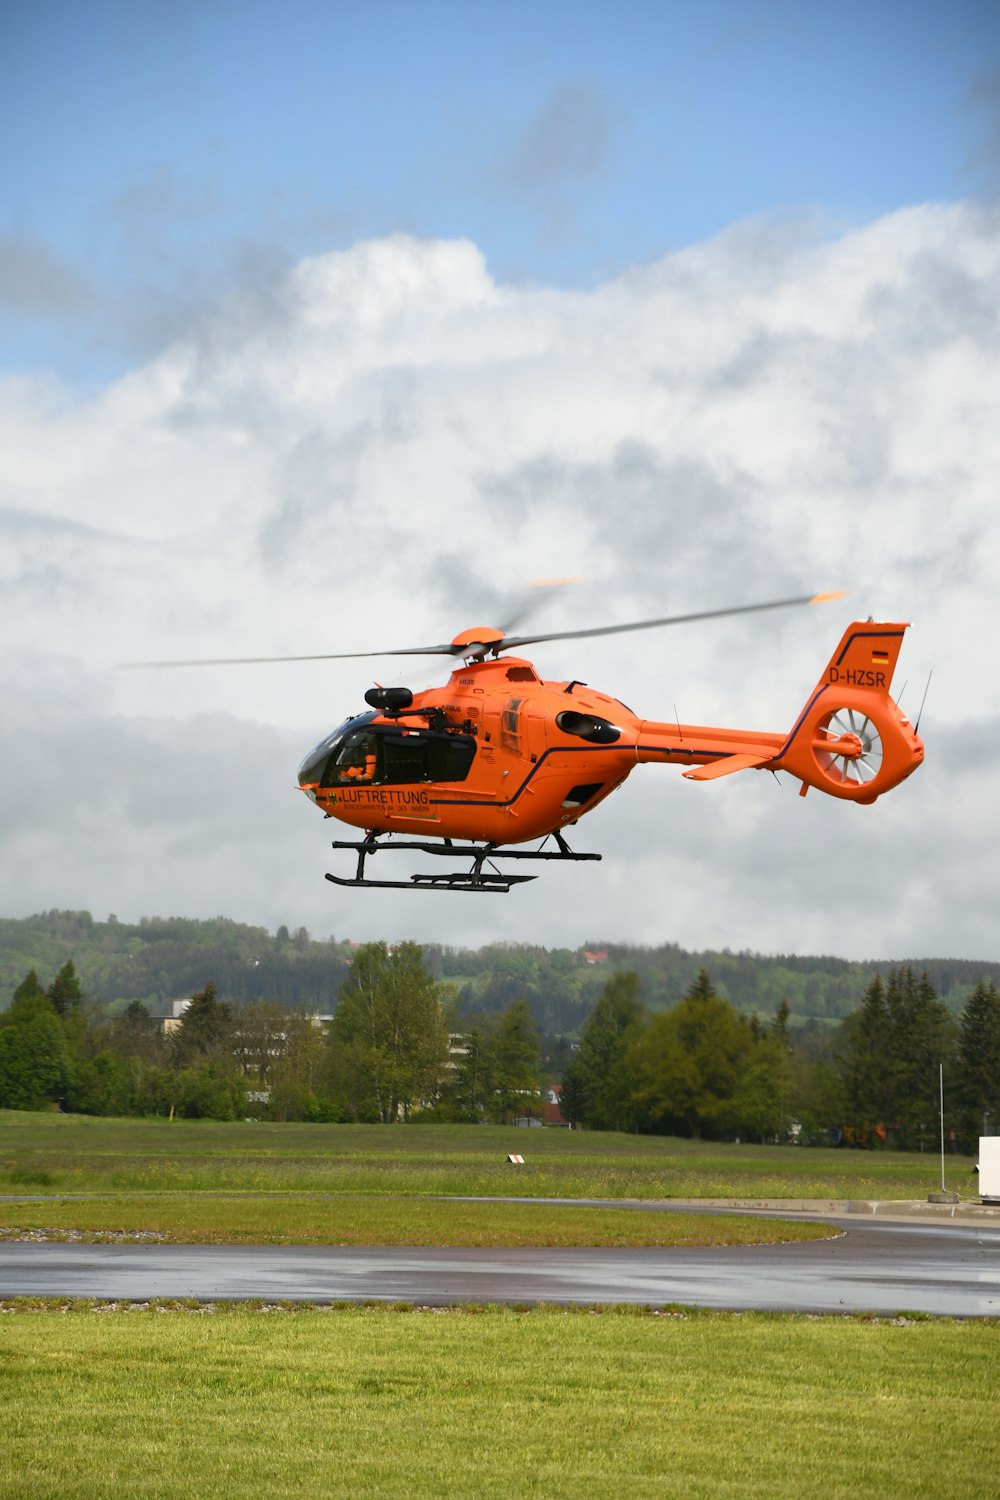 Helicóptero naranja volando sobre árboles verdes durante el día